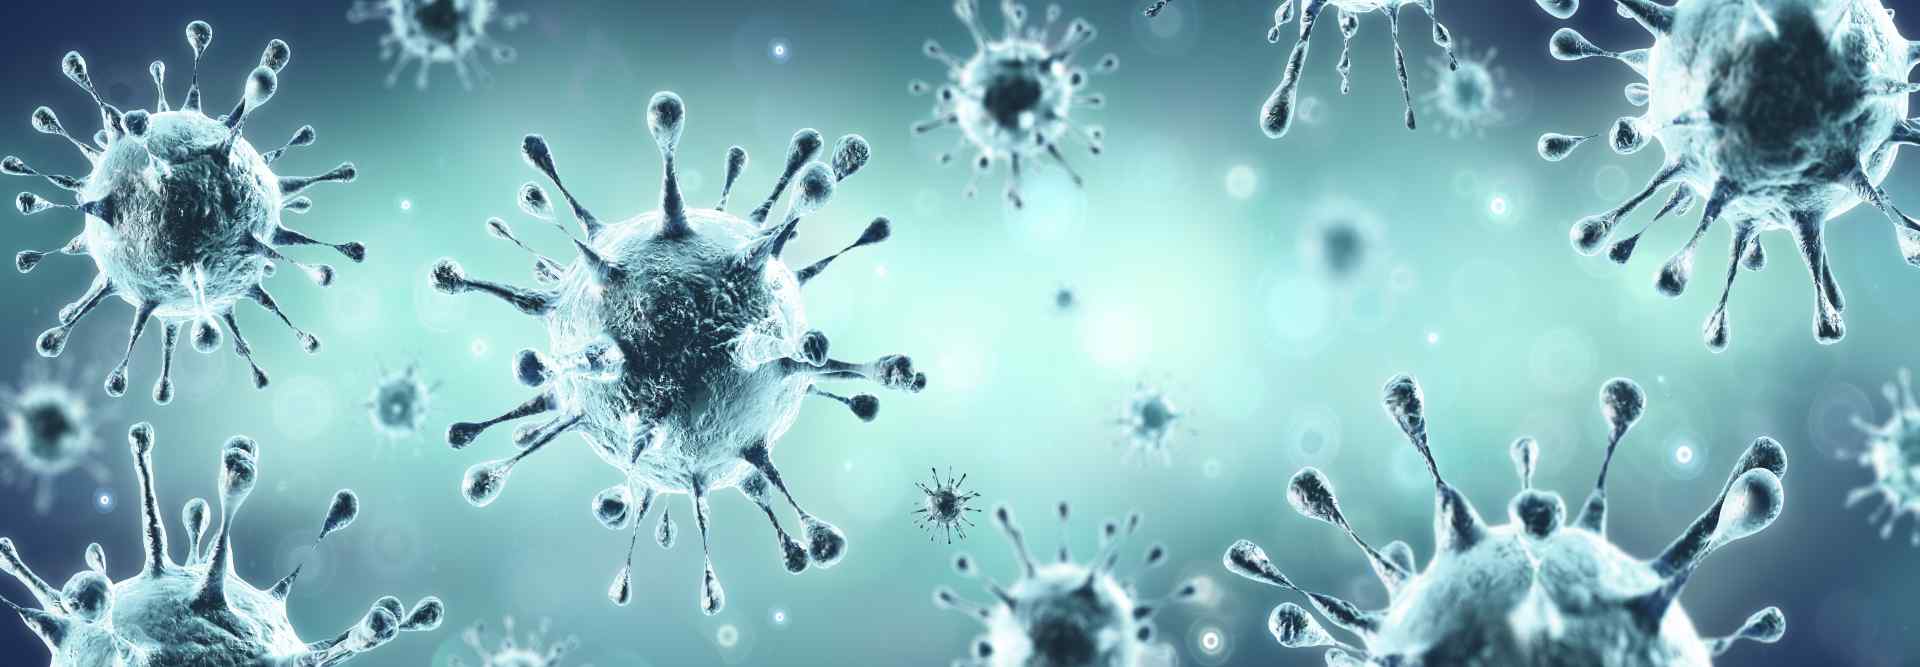 Emergenza coronavirus: aspetti psicologici